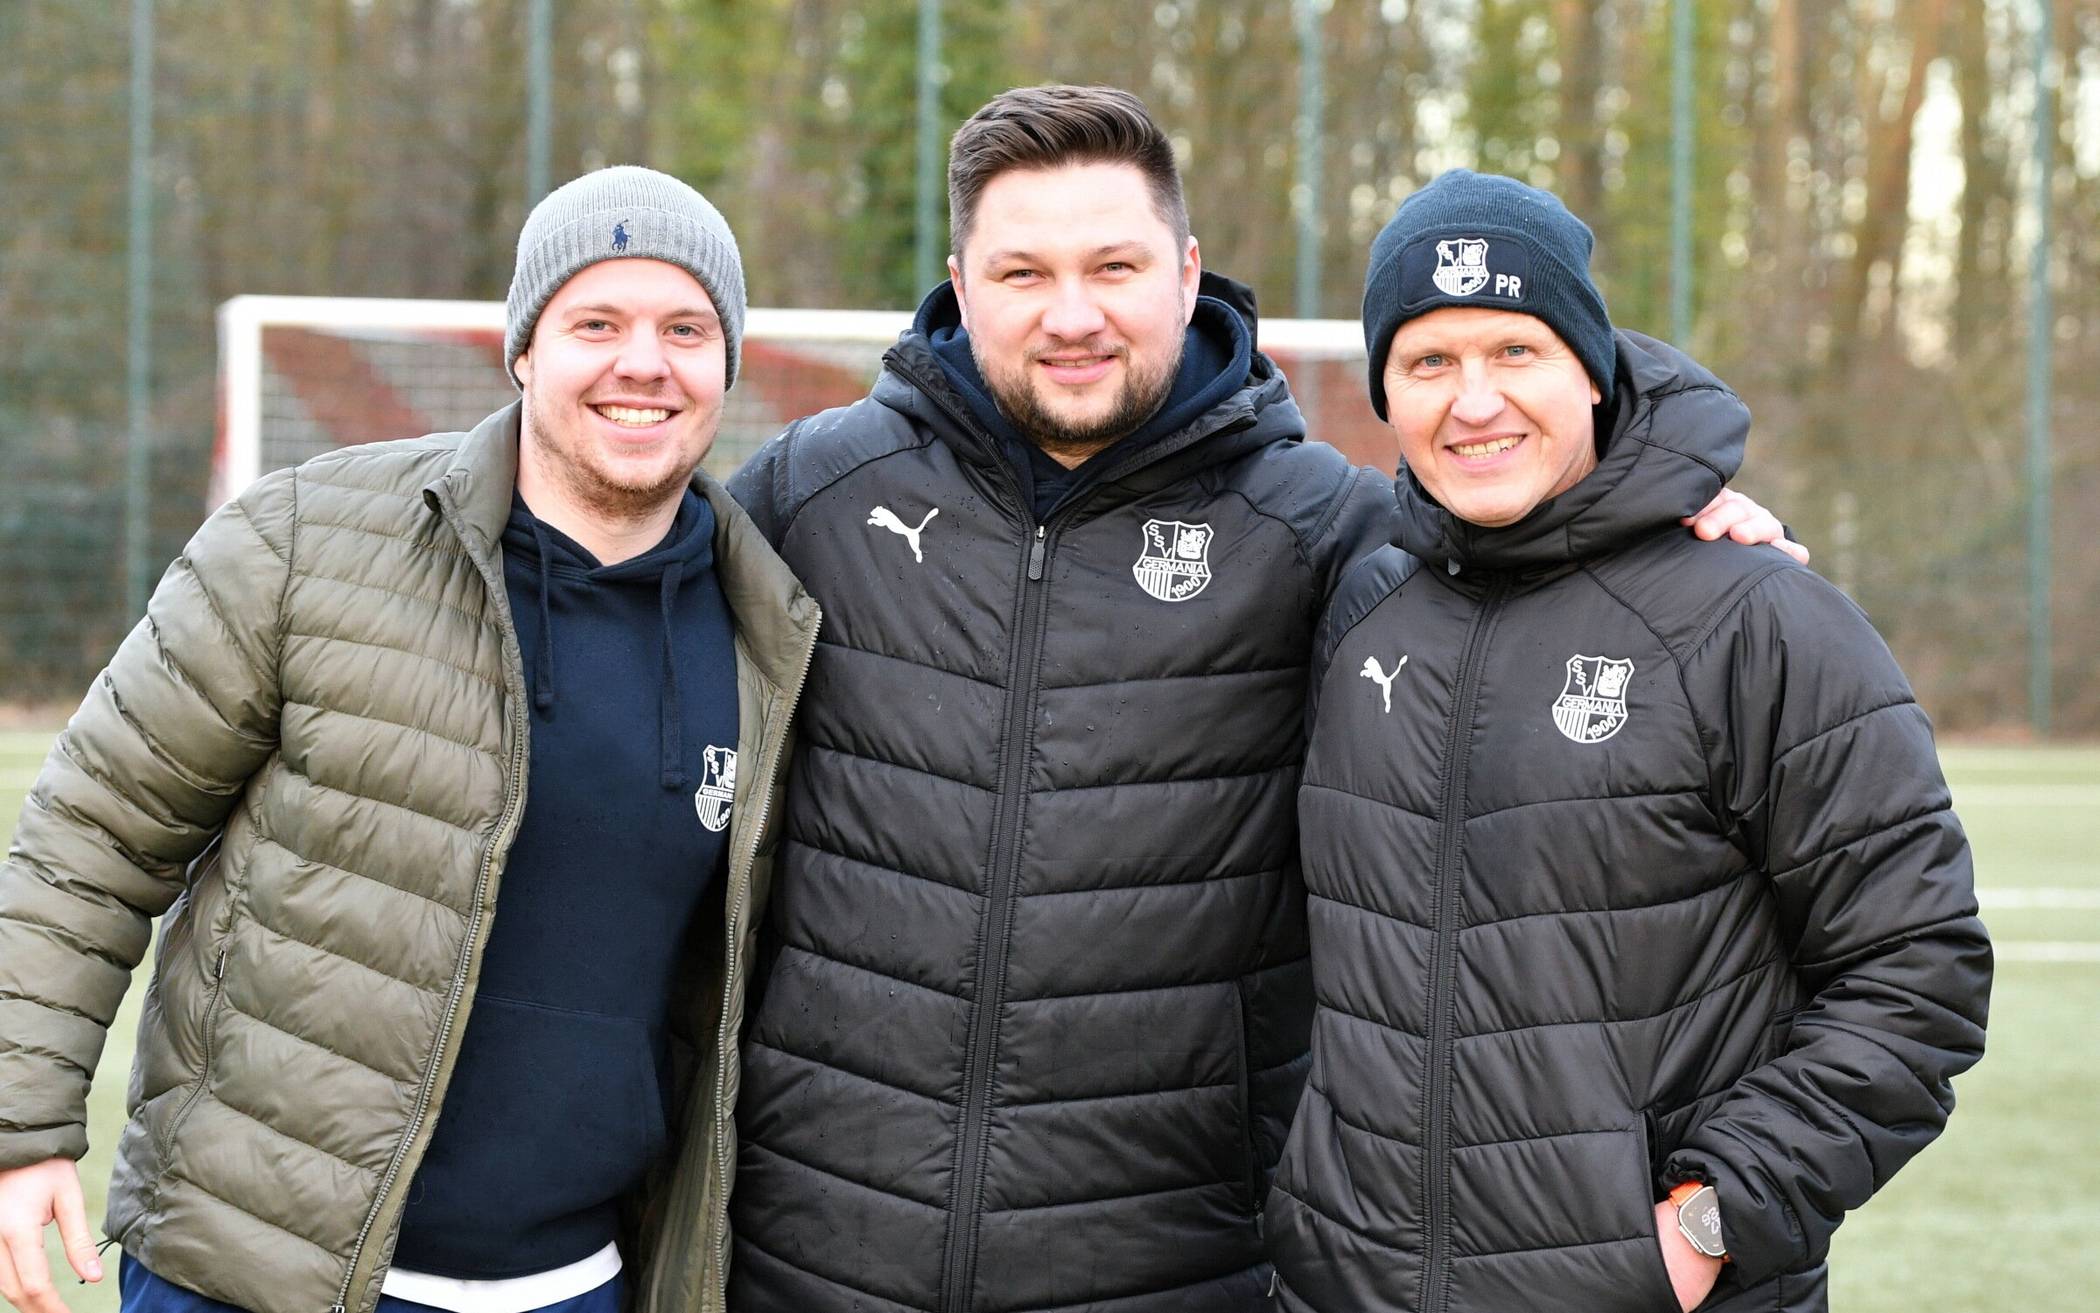 Torwarttrainer Mattis Groth, Co-Trainer Damian Schary und Cheftrainer Peter Radojewski vom Fußball-Bezirksligisten SSV Germania Wuppertal.